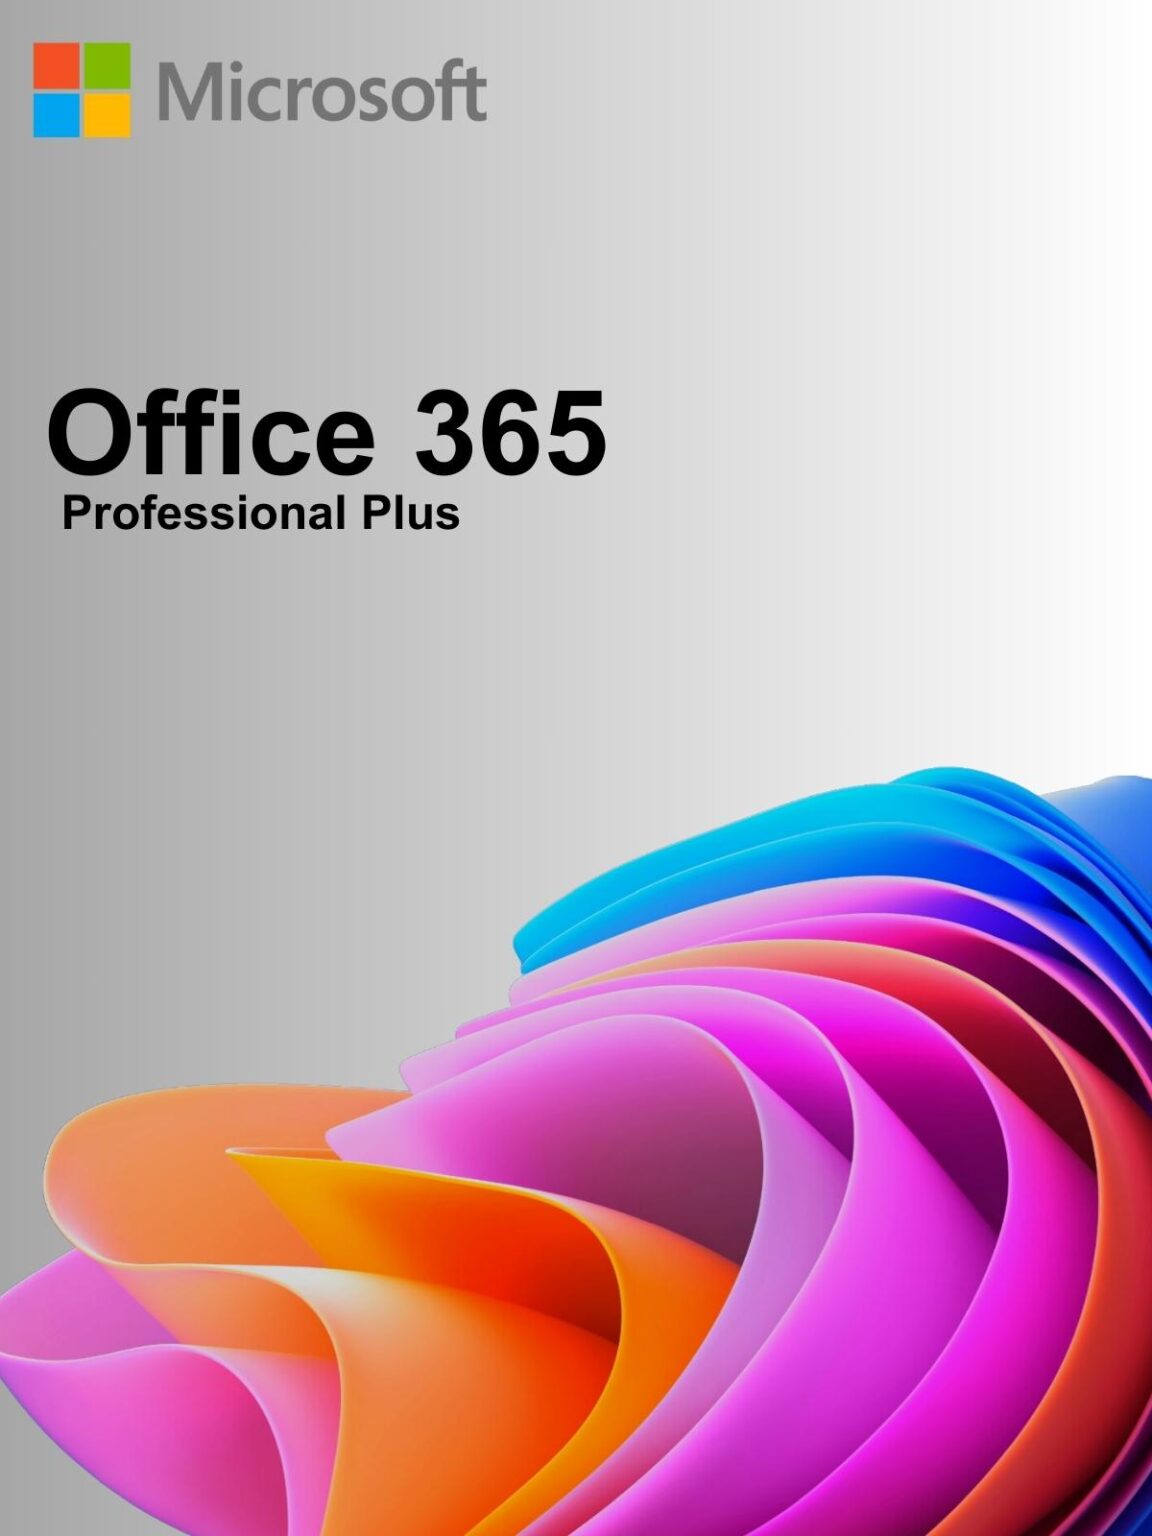 Comprar Office 365 en la tienda del software